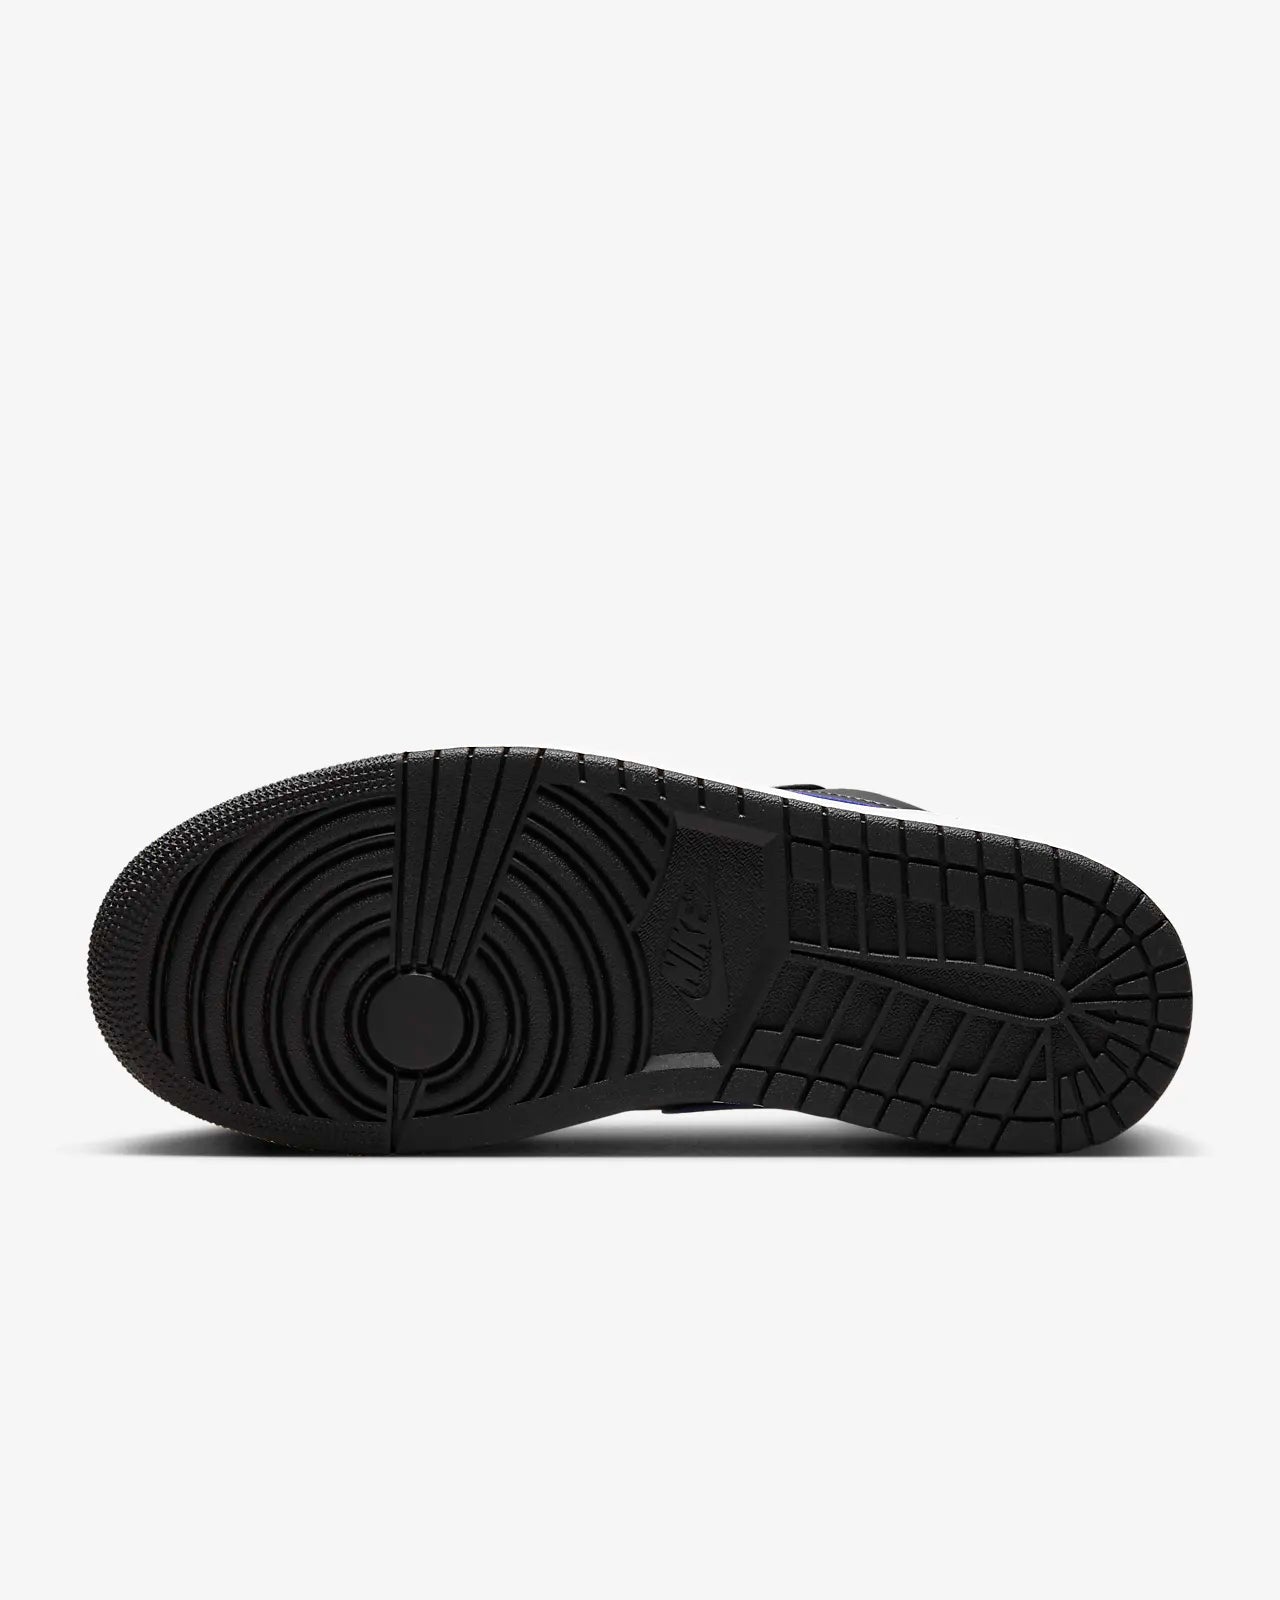 Nike - Air Jordan 1 low - Black Concord